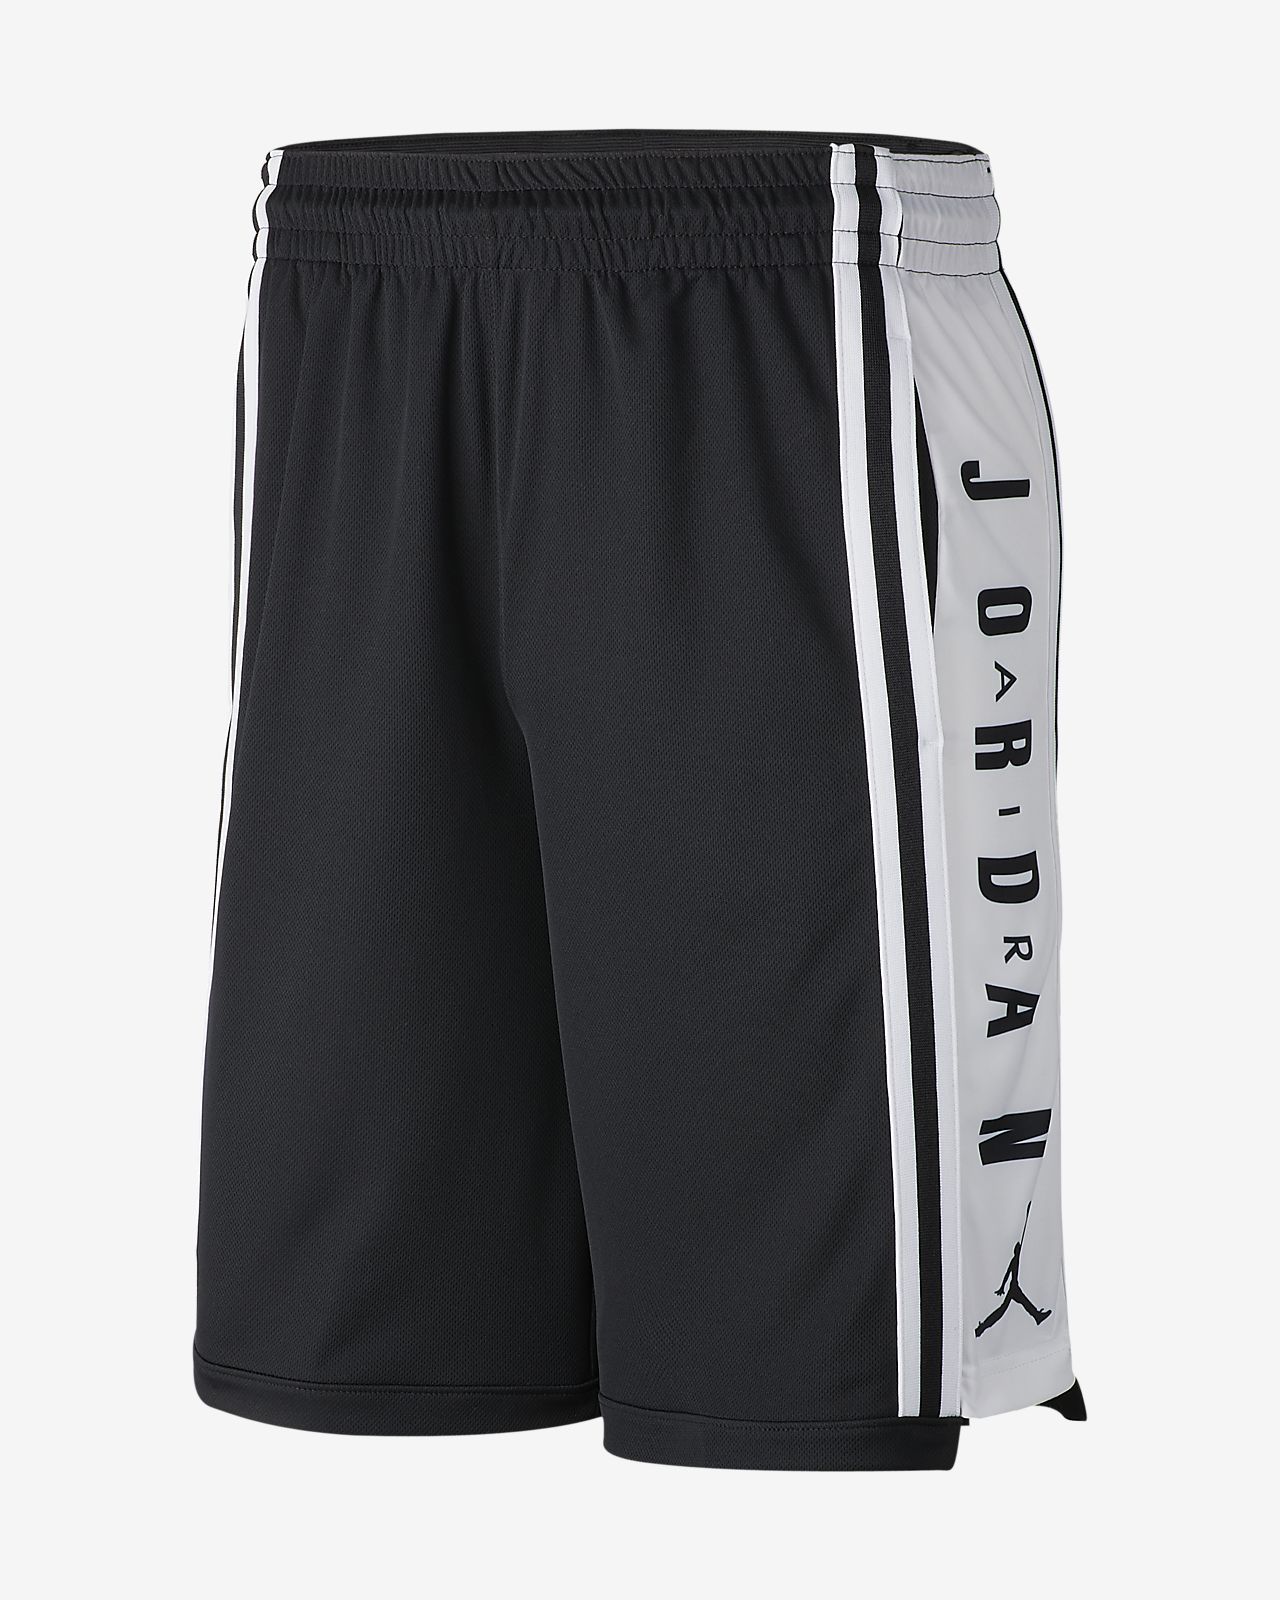 Shorts de básquetbol para hombre Jordan. Nike PR